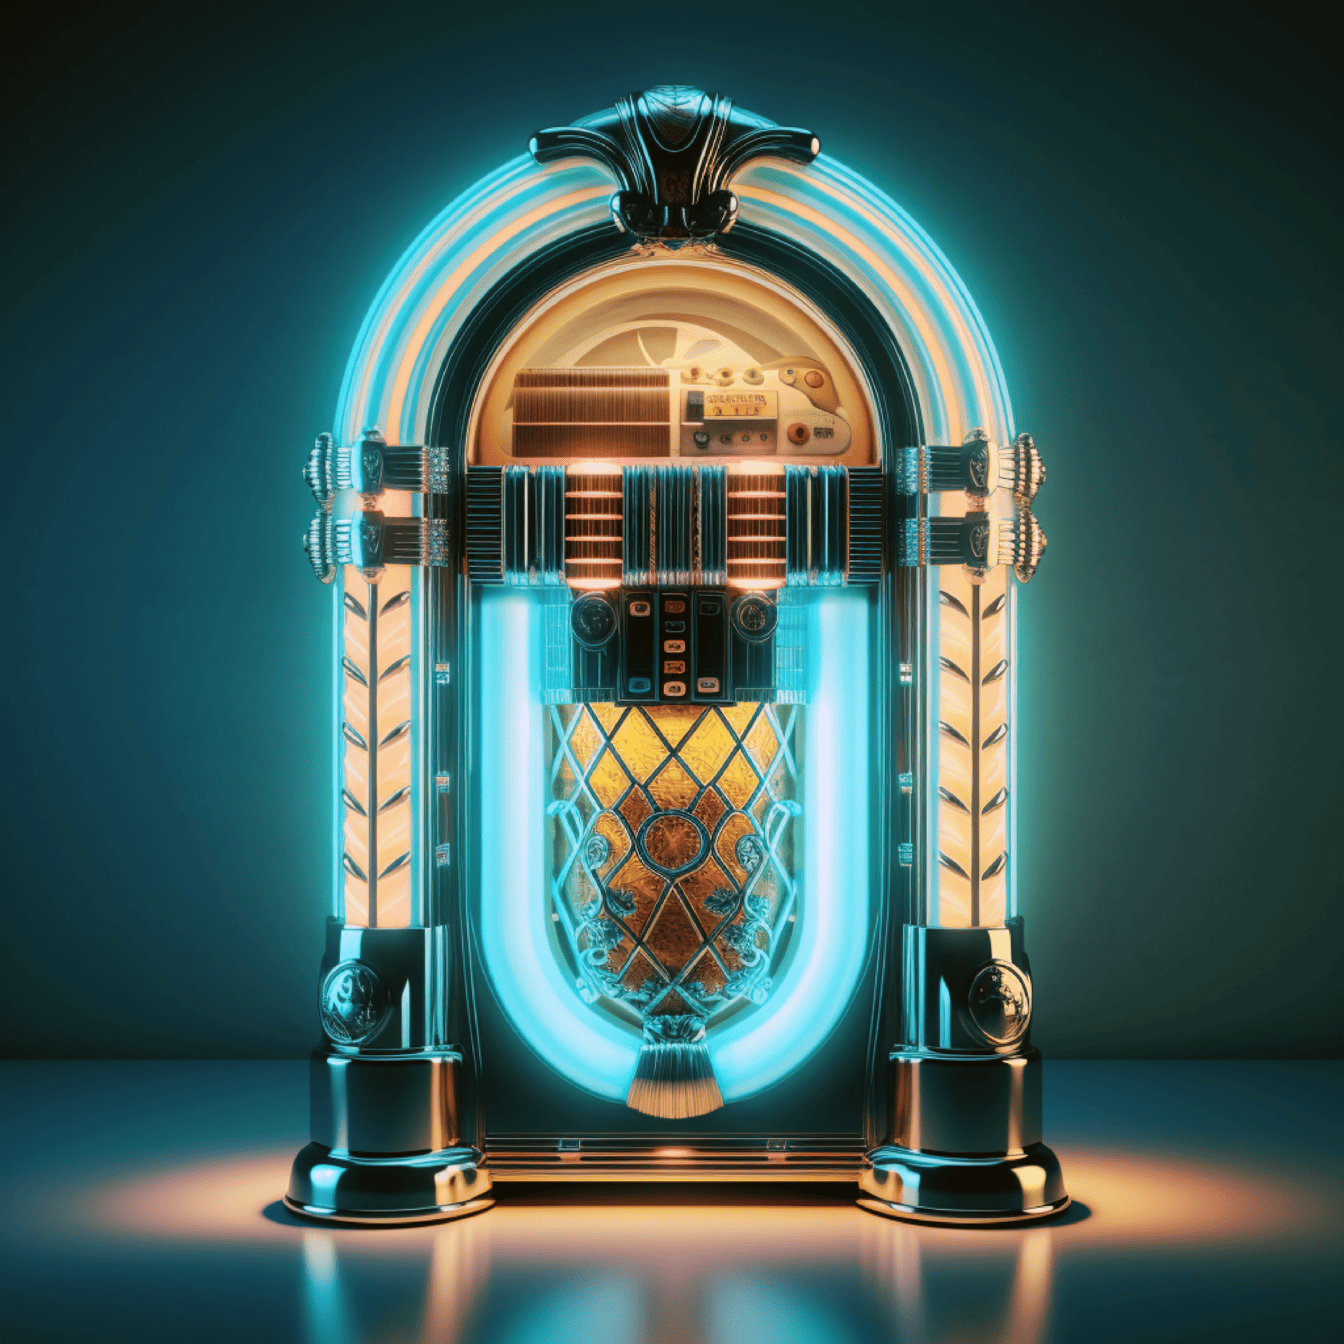 Глянцевый музыкальный автомат с золотым блеском и неоновой подсветкой